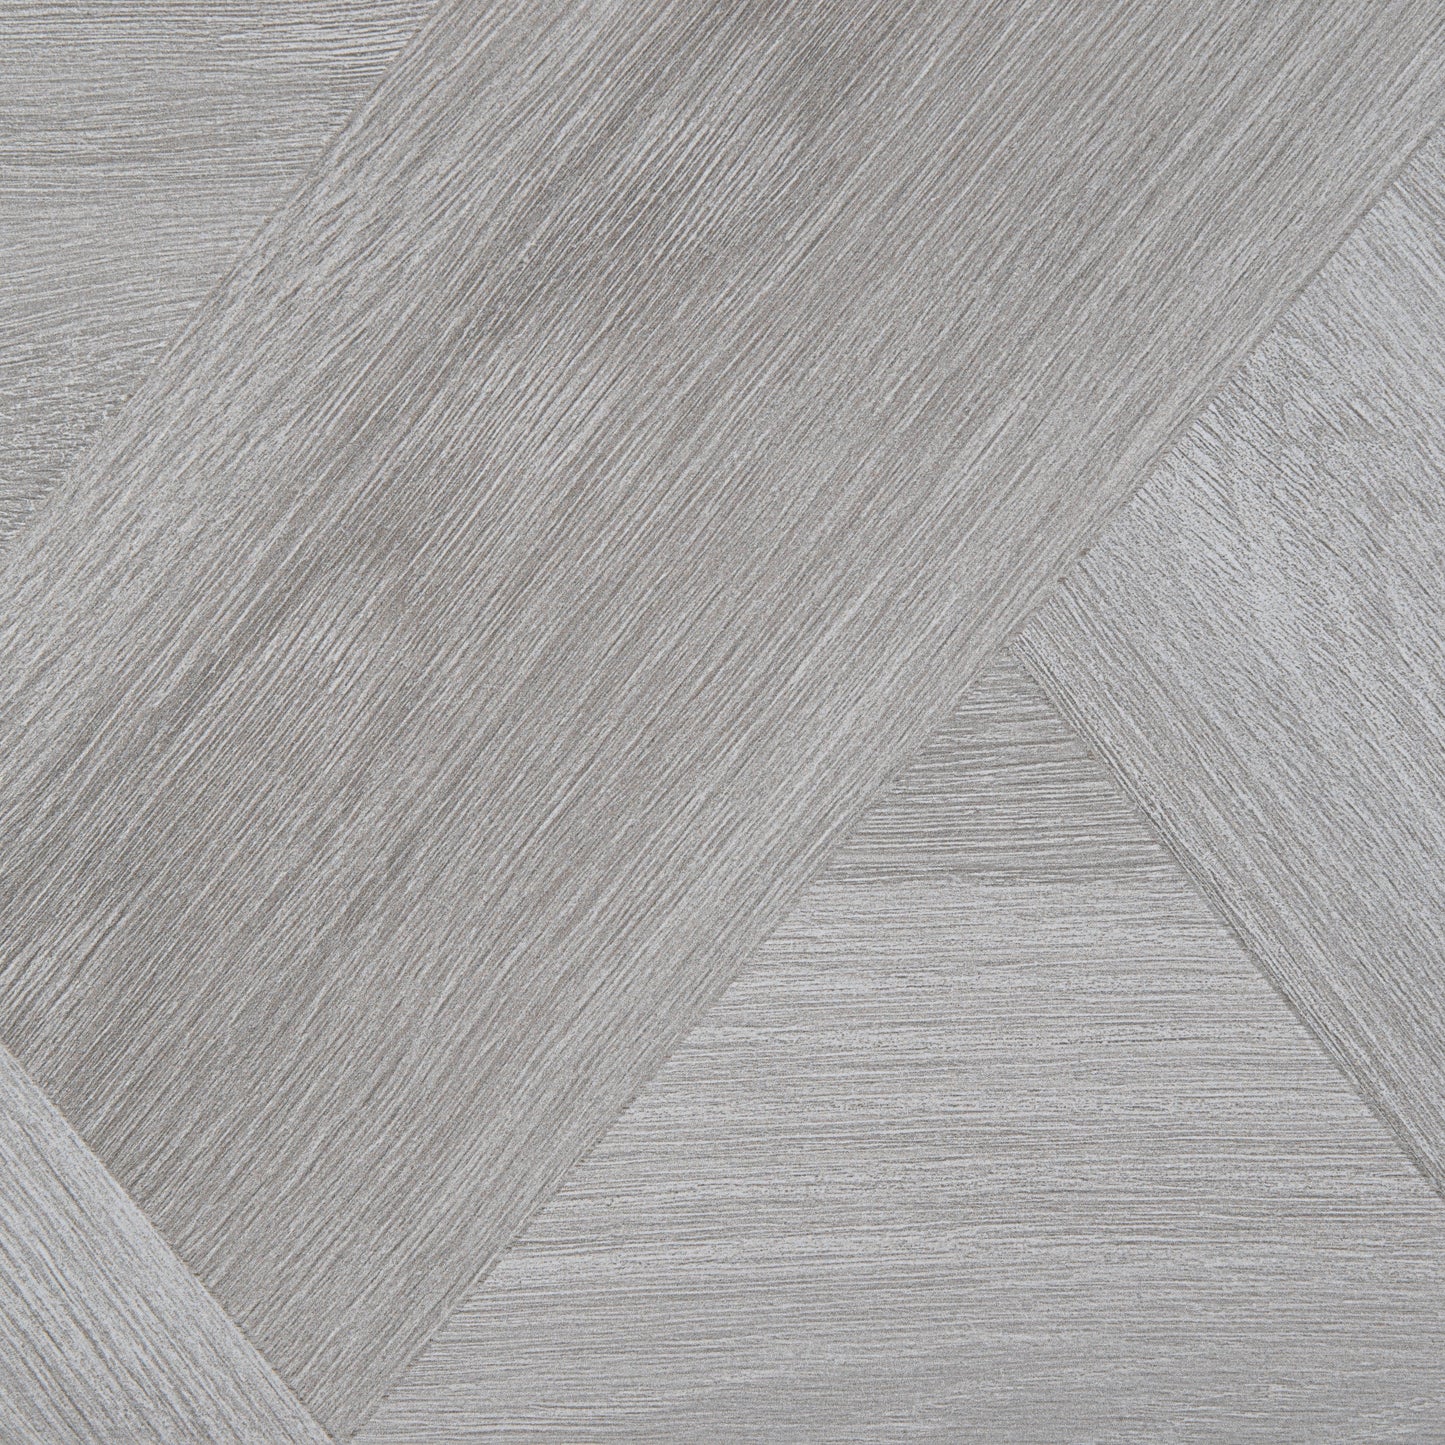 Tiles  -  Atrium Green Park Ash Tile 60.8 X 60.8Cm  -  50155320